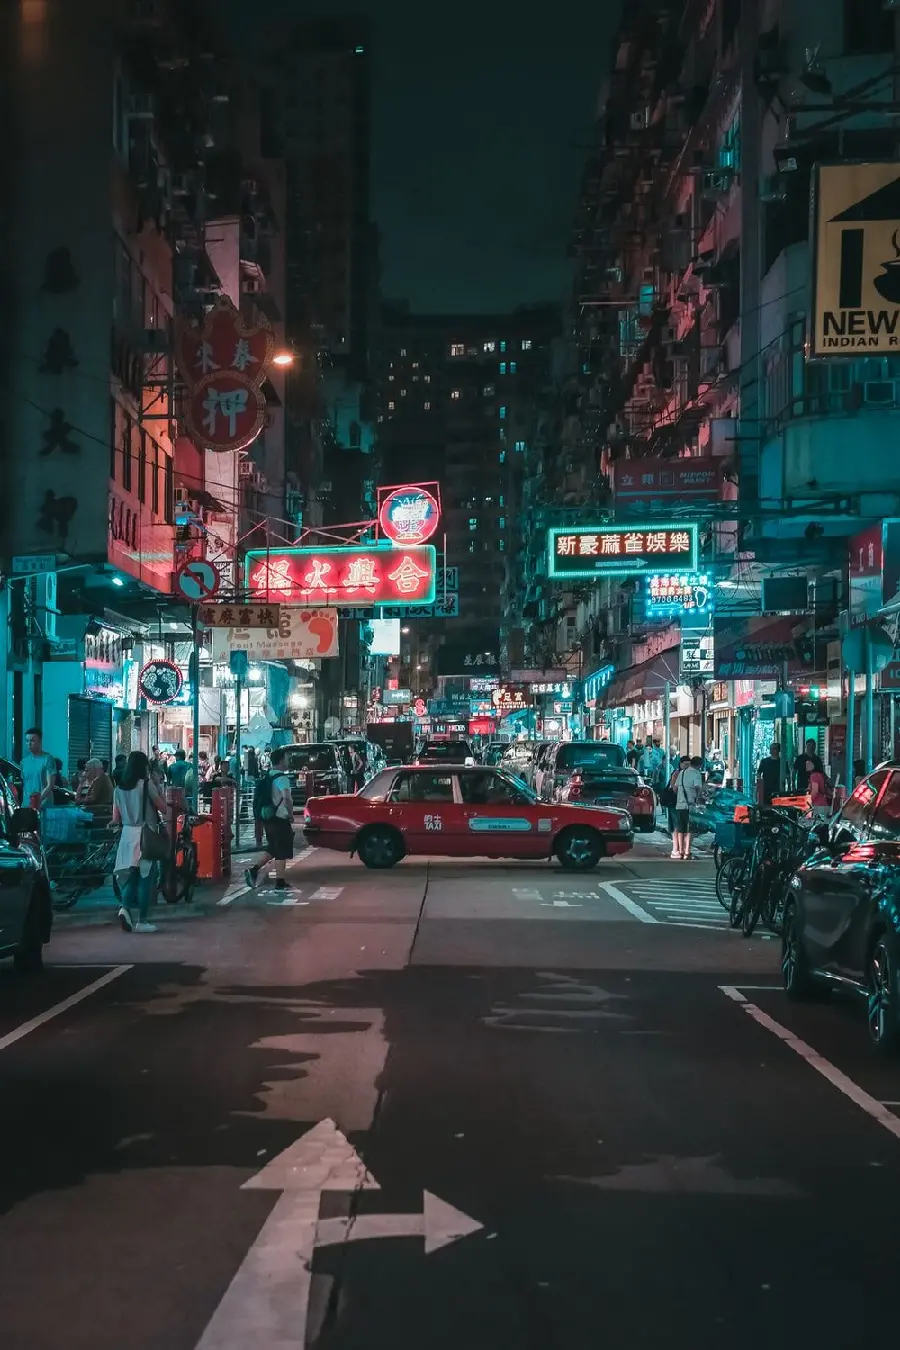 دانلود عکس خیابان های پر رفت و آمد شهر هنگ کنگ با کیفیت بالا